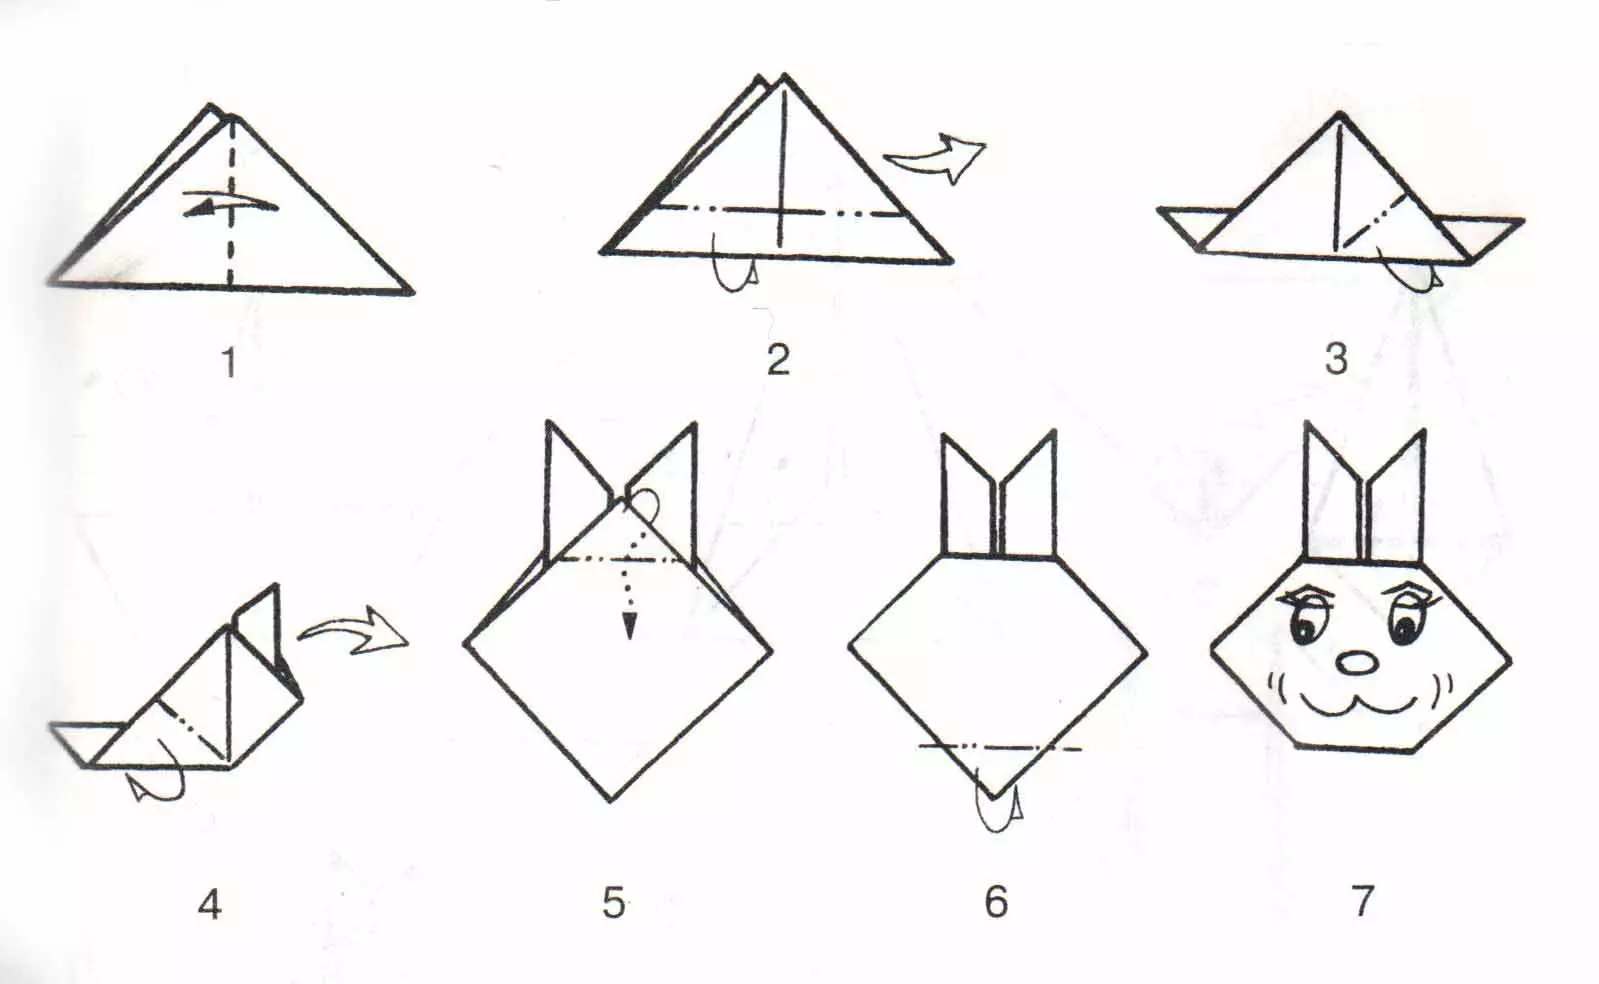 Origami lati iwe funfun A4: Orile-ina fun awọn ọmọde 8-9 ati ọdun 12-13, awọn iṣẹ ọnà ti o rọrun fun awọn olubere. Awọn igbero ti awọn eeka ti a fi silẹ 26951_12